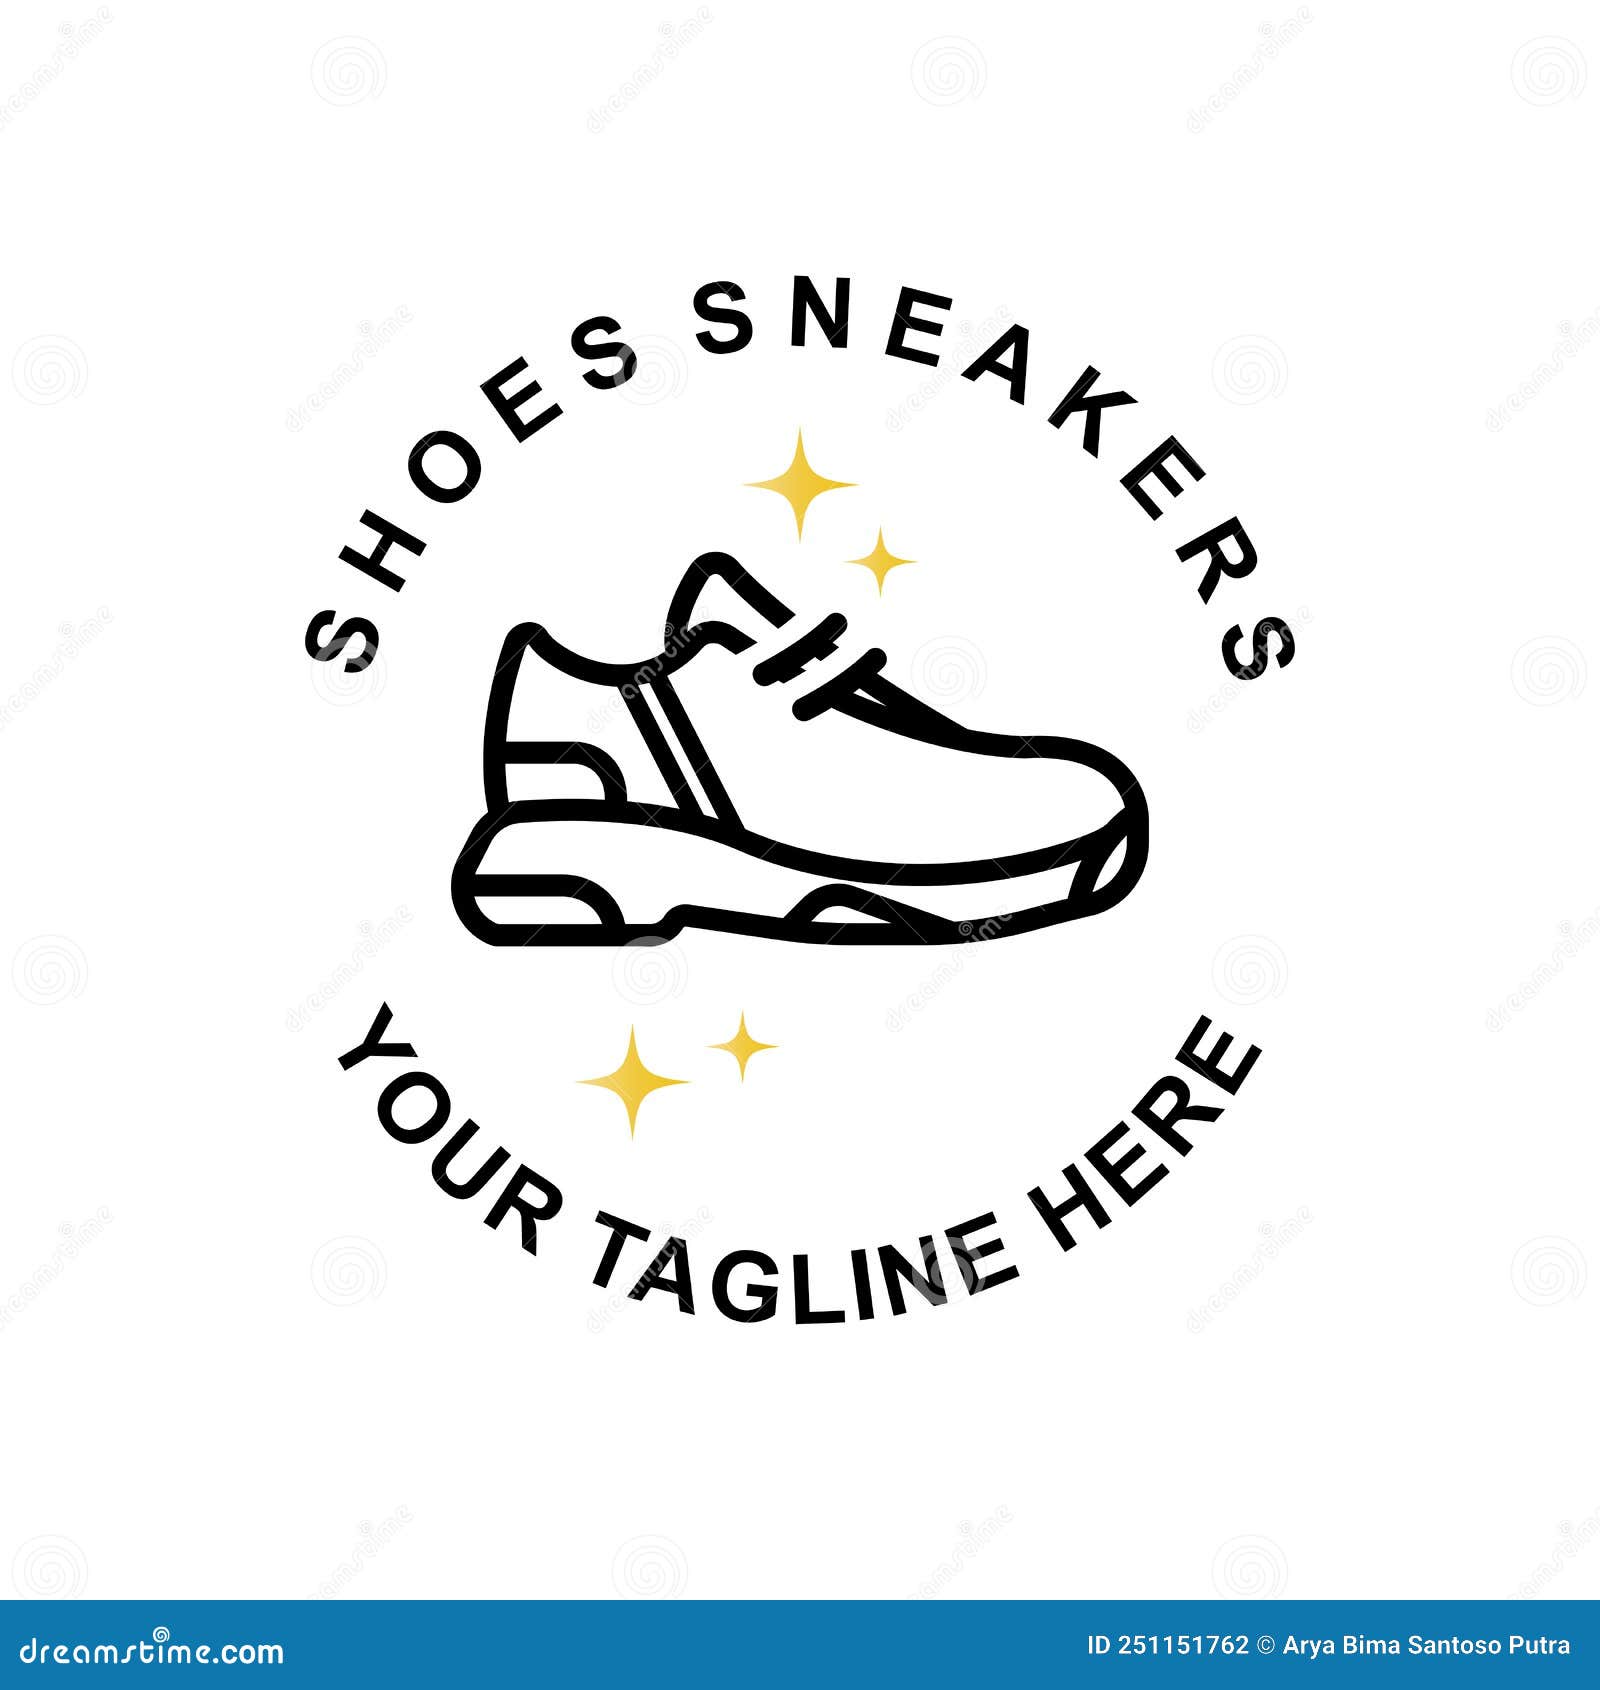 sneaker logo ideas 10